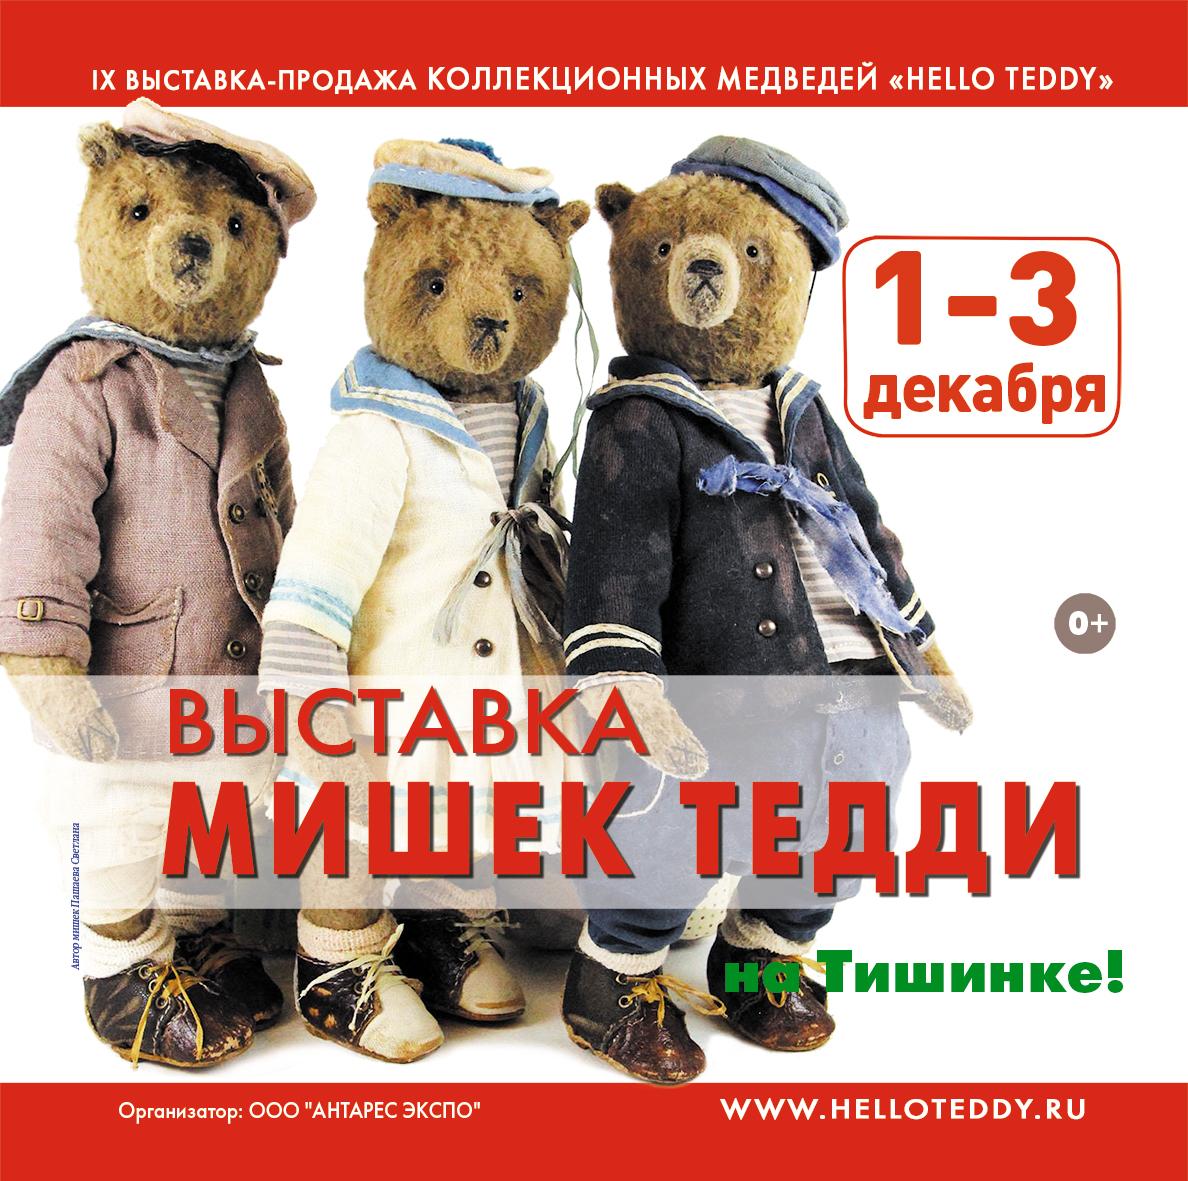  Московская международная выставка коллекционных медведей Тедди &quot;Hello Teddy&quot;